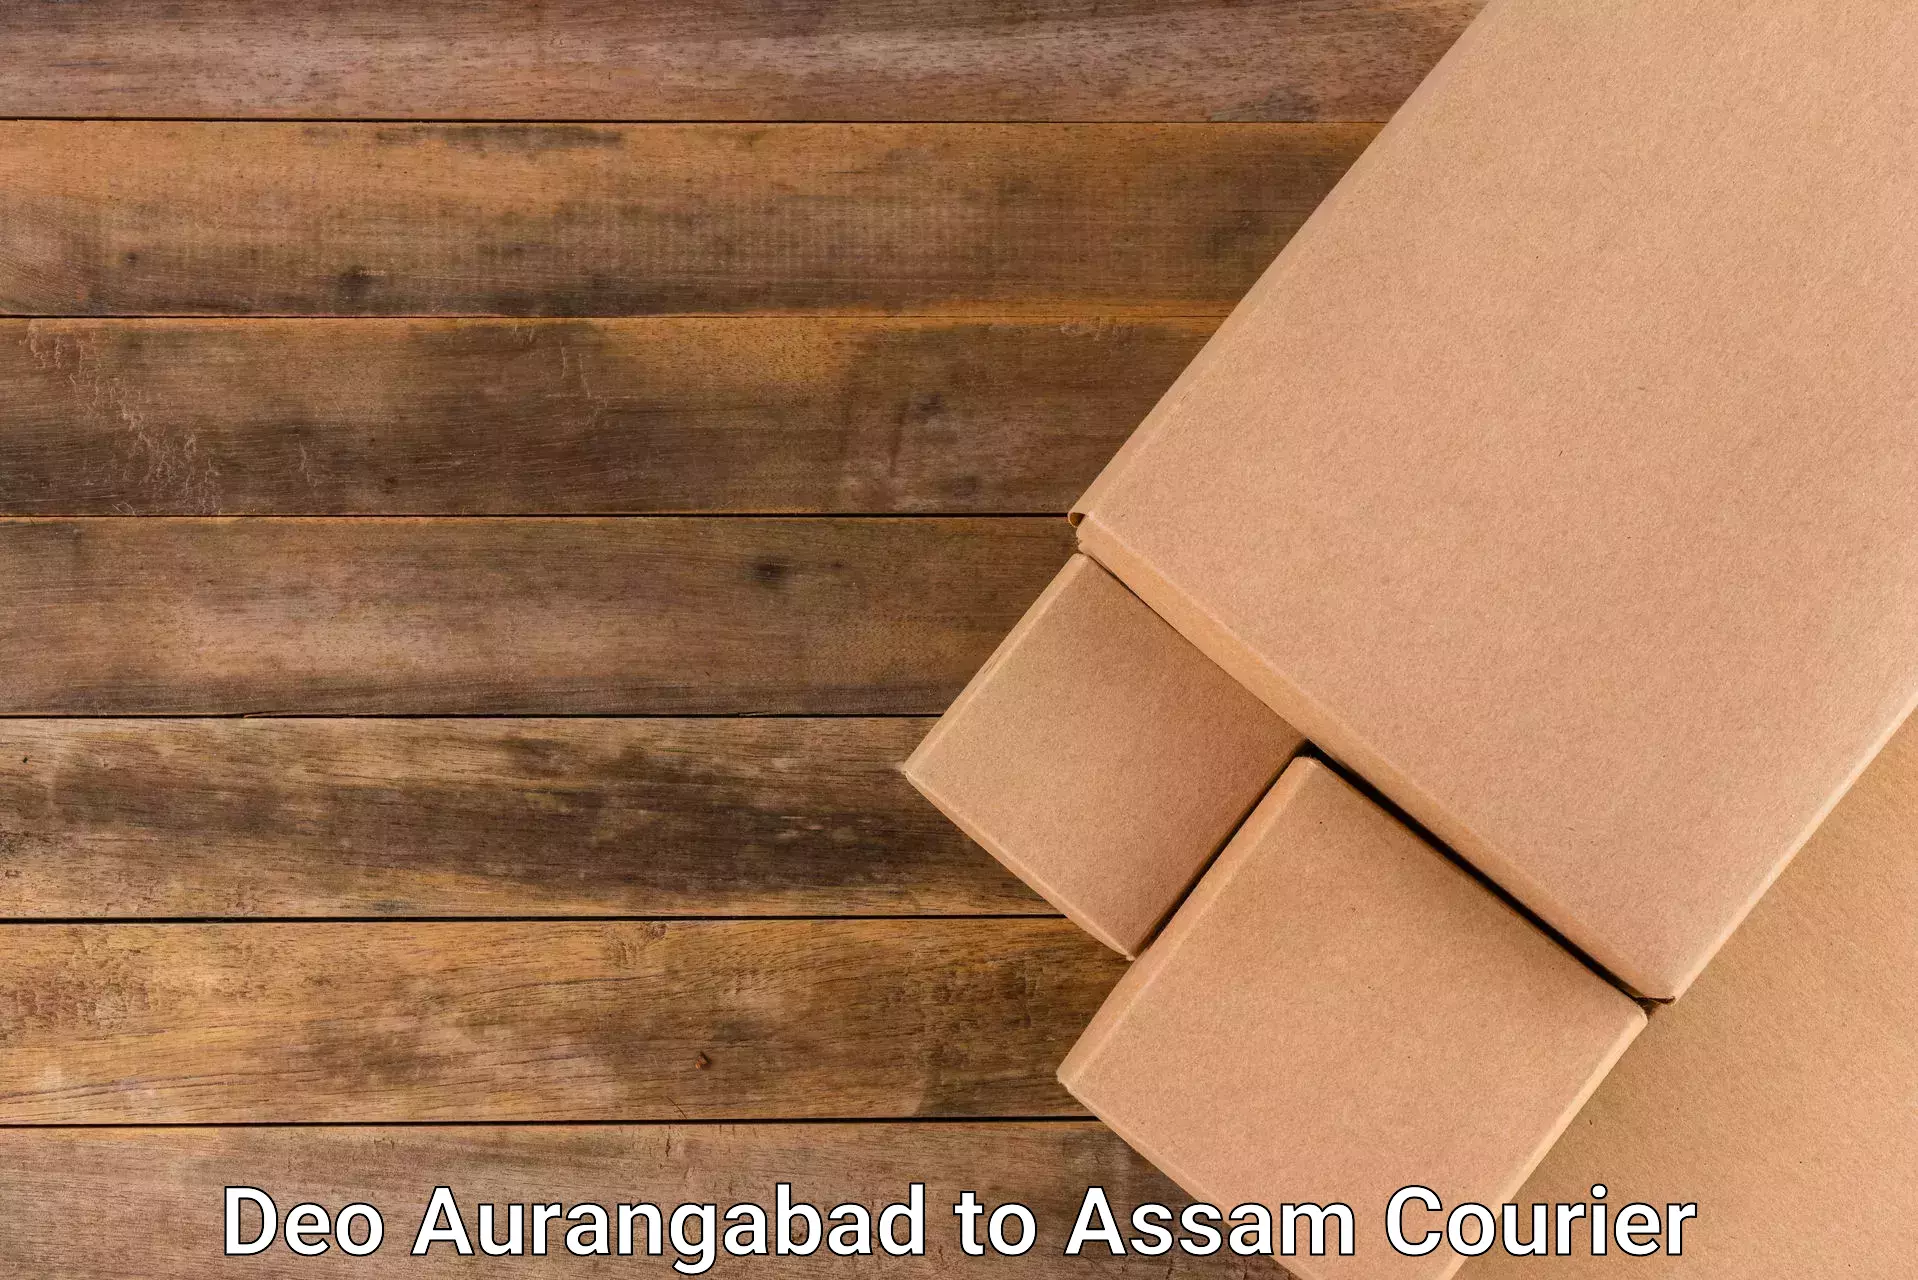 Business shipping needs Deo Aurangabad to Assam